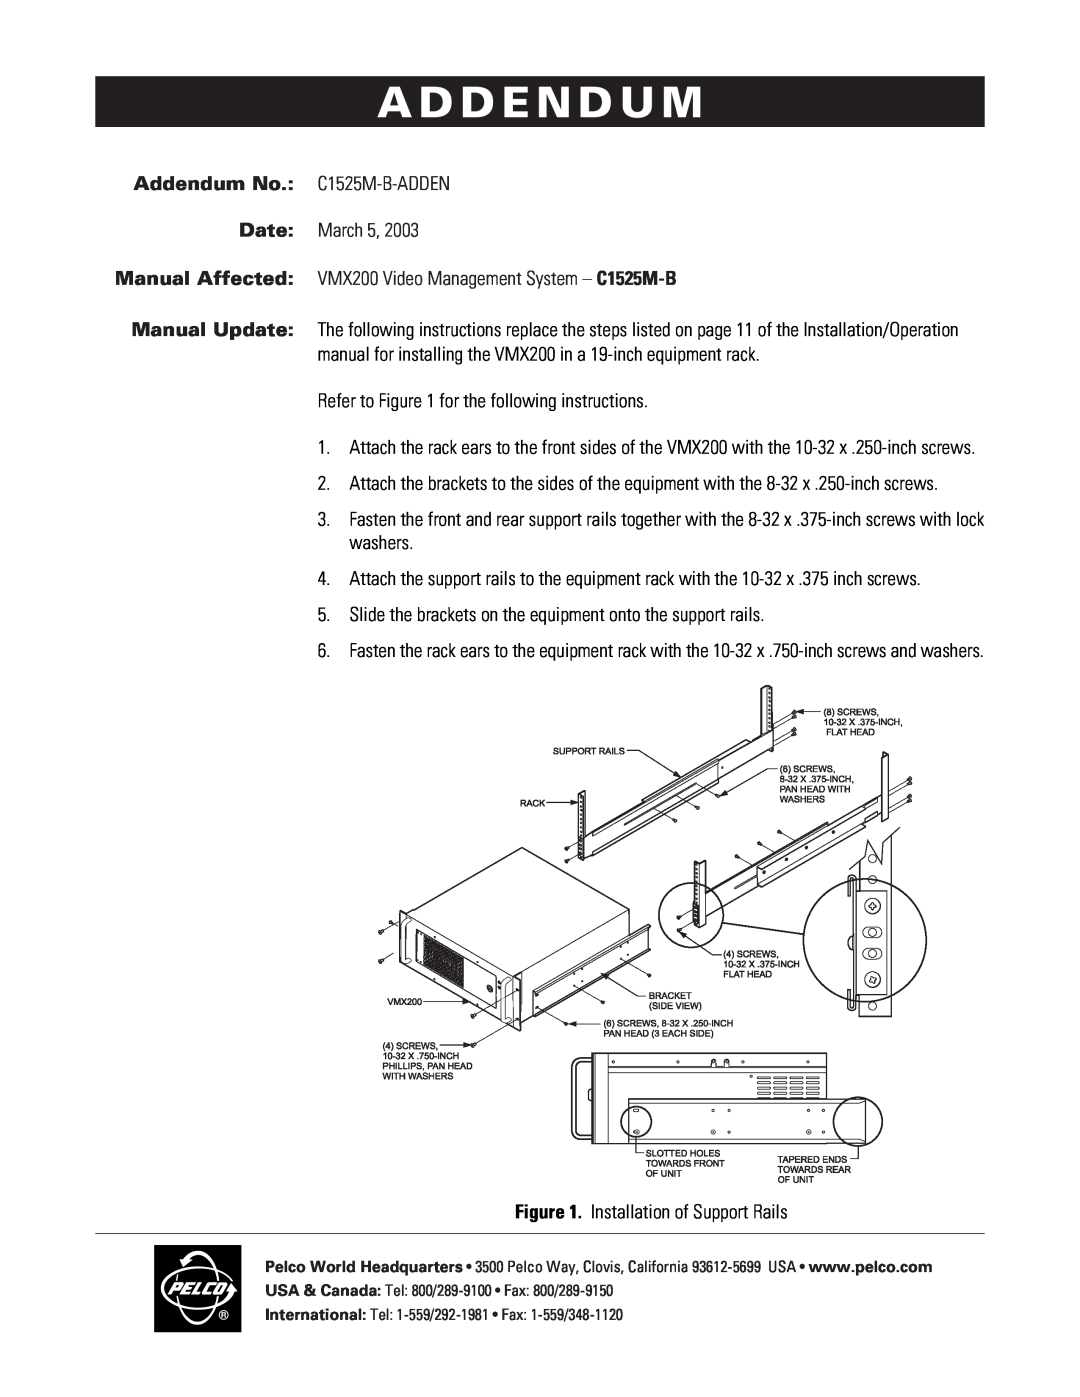 Pelco VMX200 operation manual A D D E N D U M, Addendum No. C1525M-B-ADDEN, Date March 